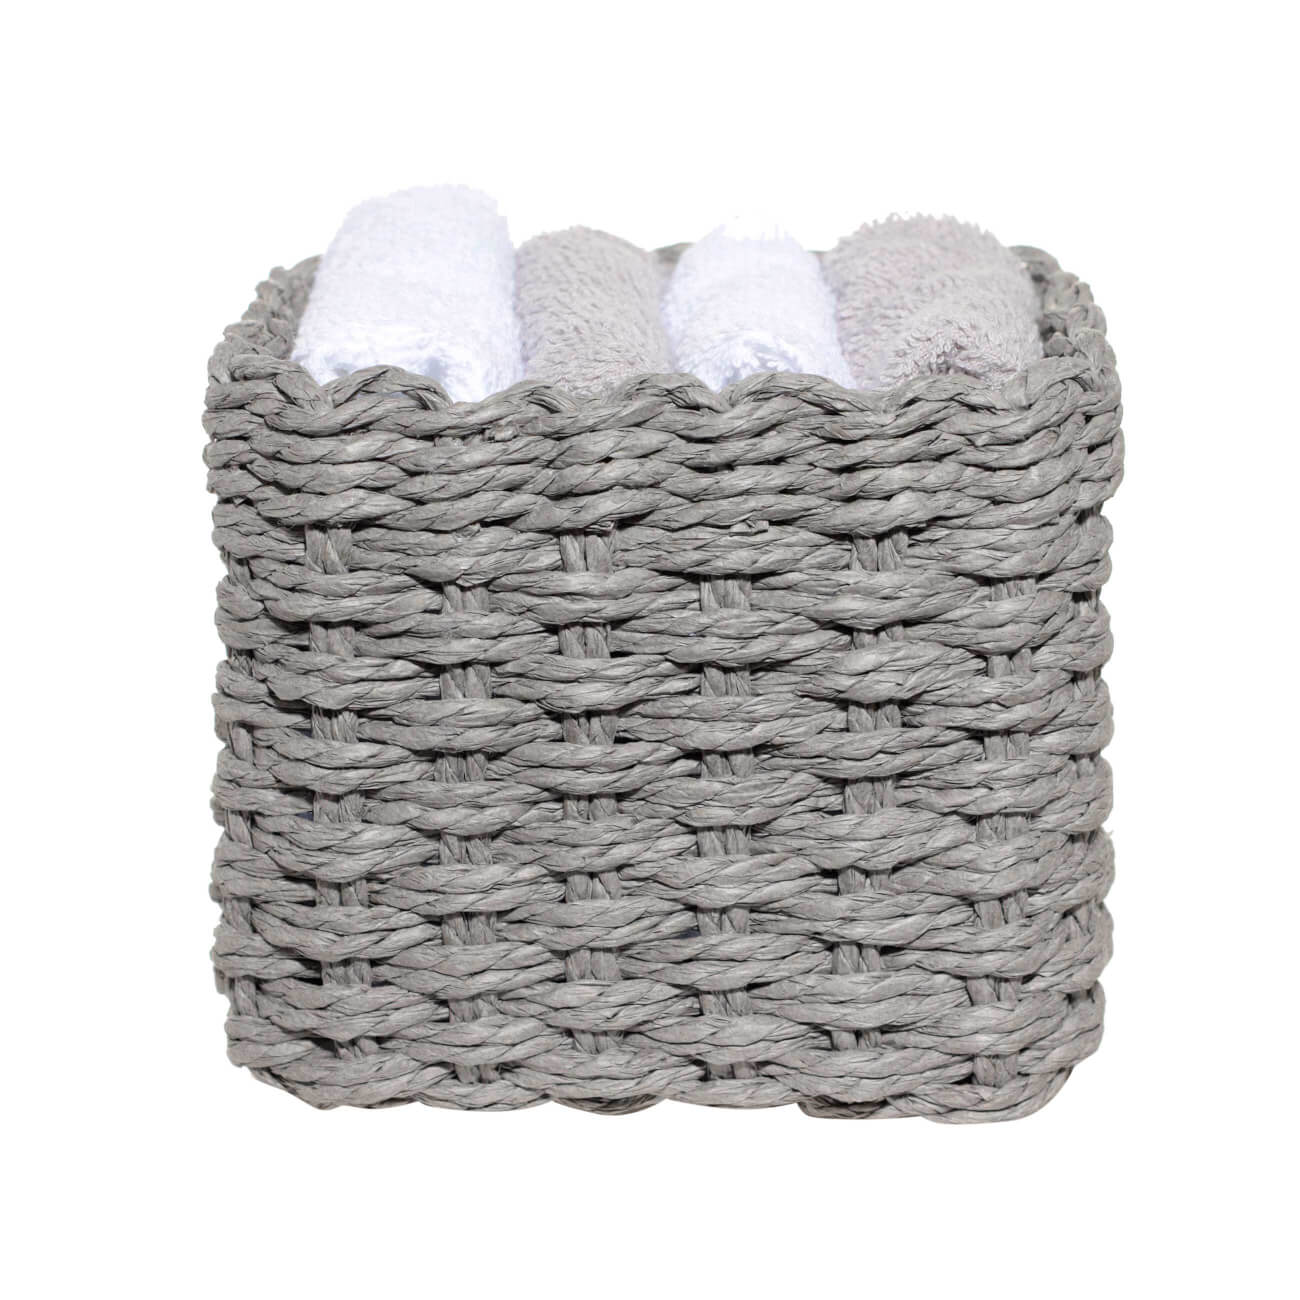 Полотенце, 30х30 см, 4 шт, в корзине, хлопок/целлюлоза, серое/белое, Basket towel изображение № 1